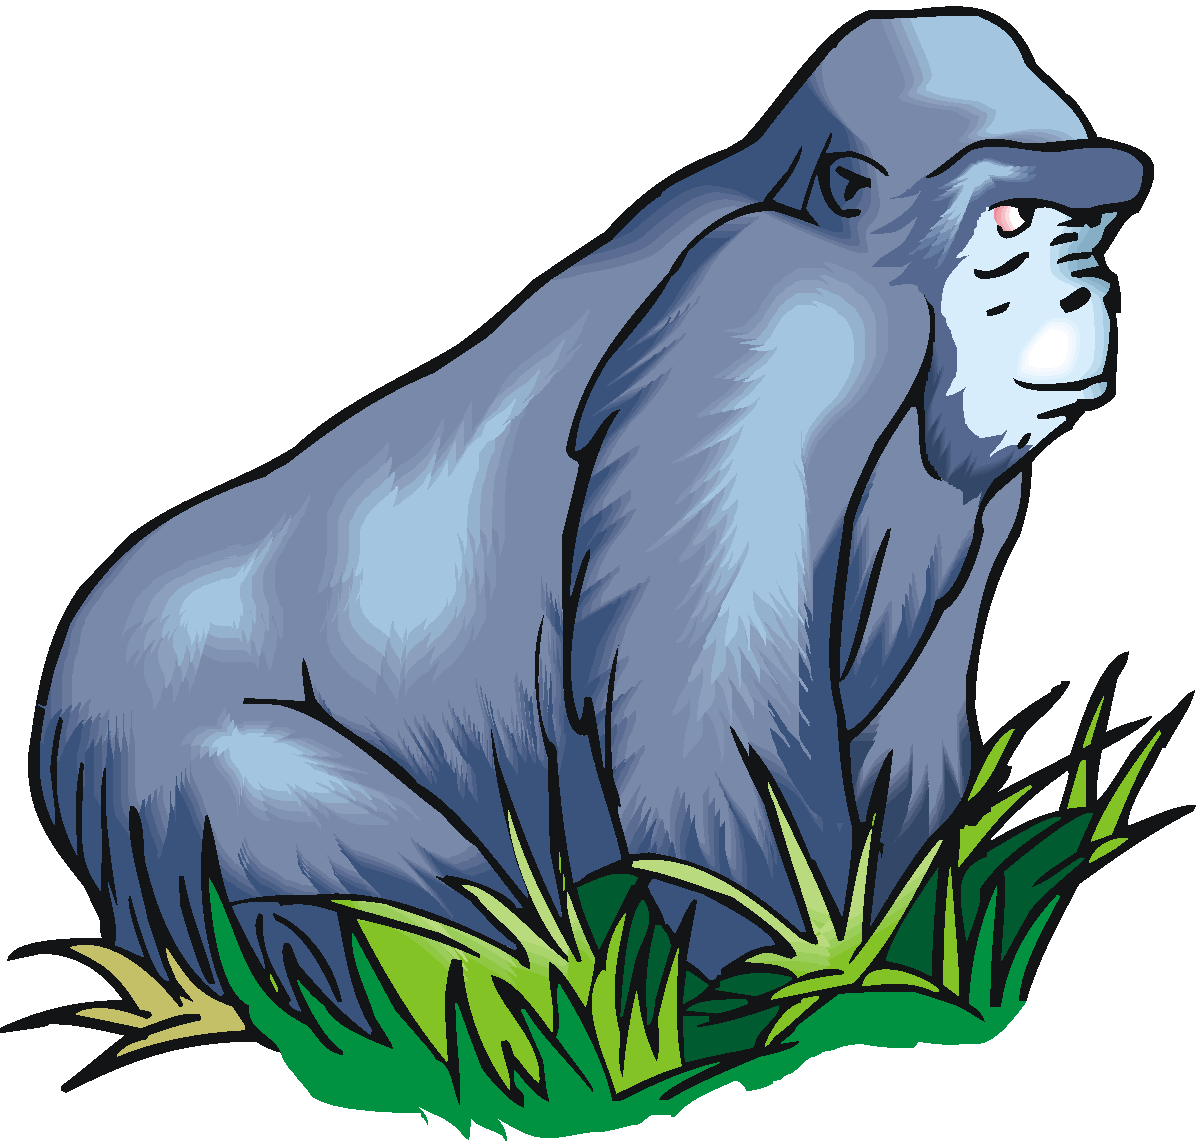 Gorilla Clip Art Cartoon   Clipart Panda   Free Clipart Images